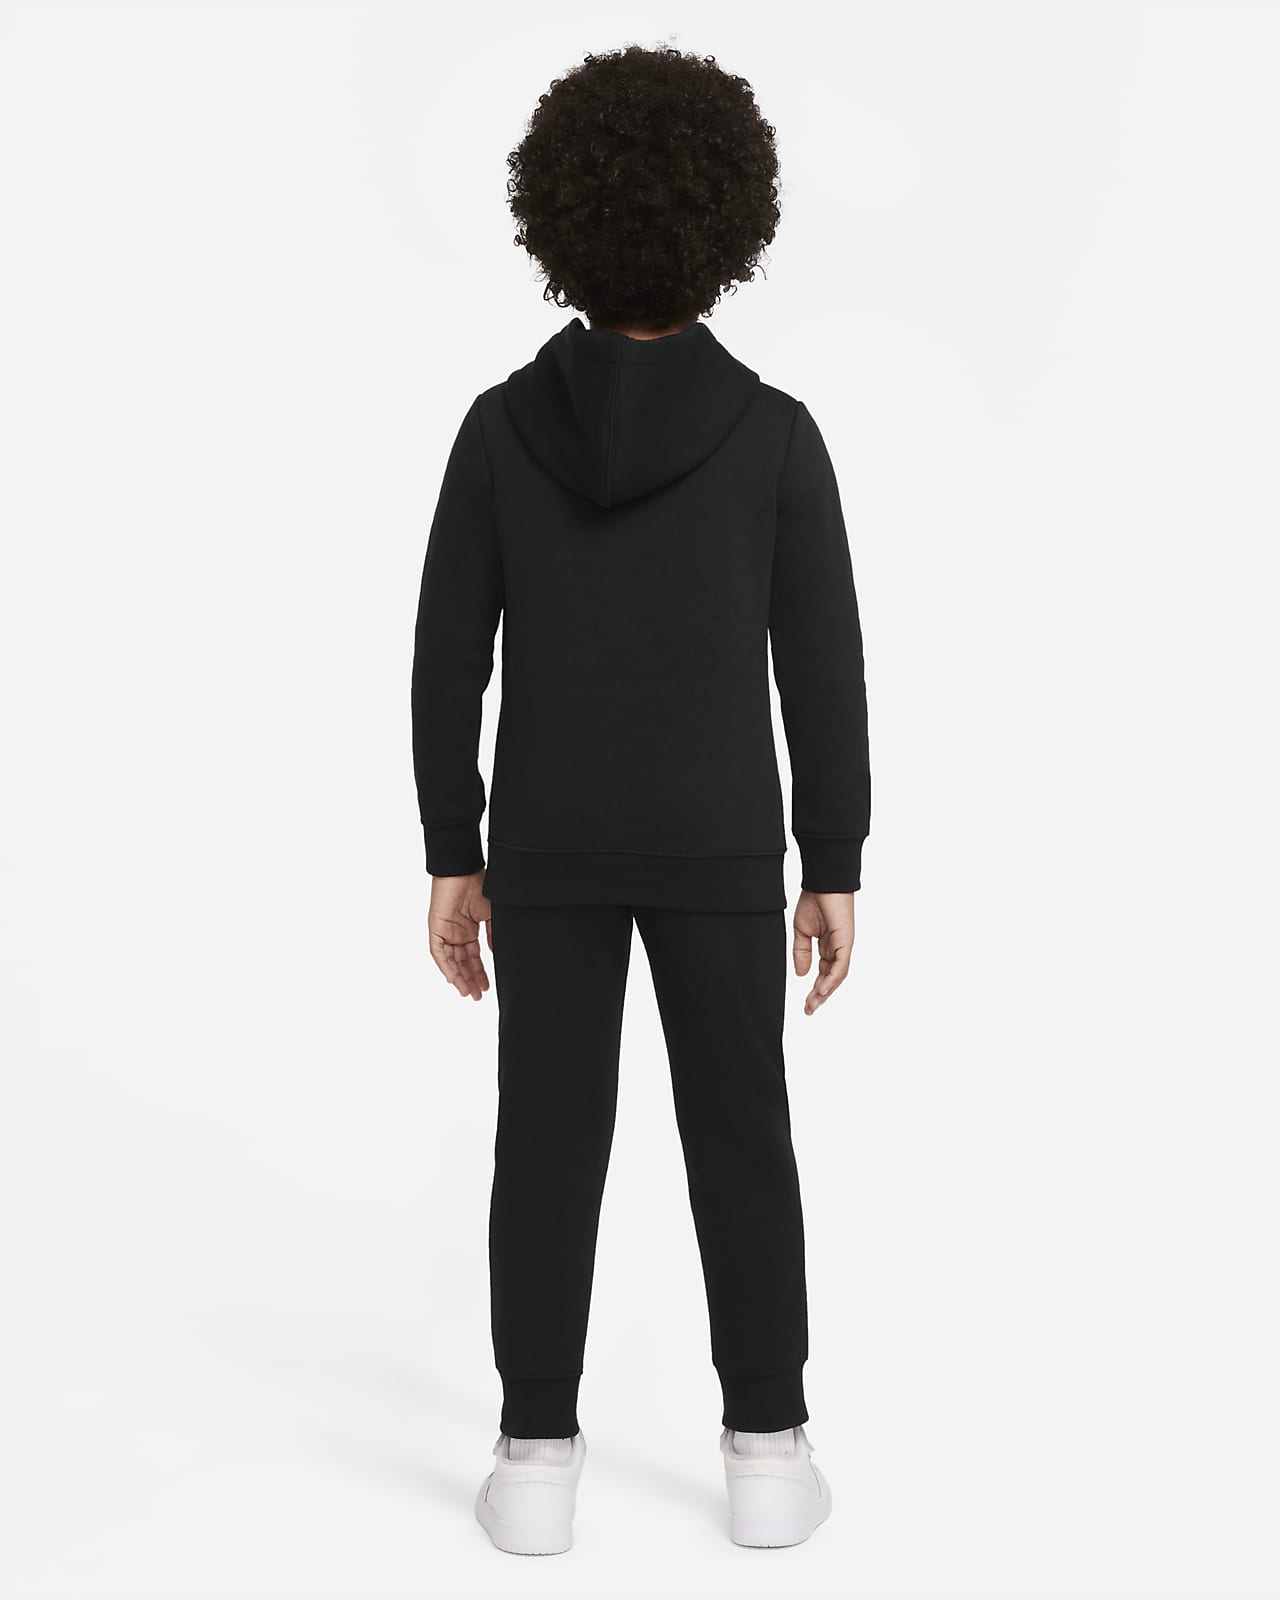 Ensemble avec sweat à capuche et pantalon en tissu Fleece Essentials Jordan  pour Jeune enfant. Nike FR